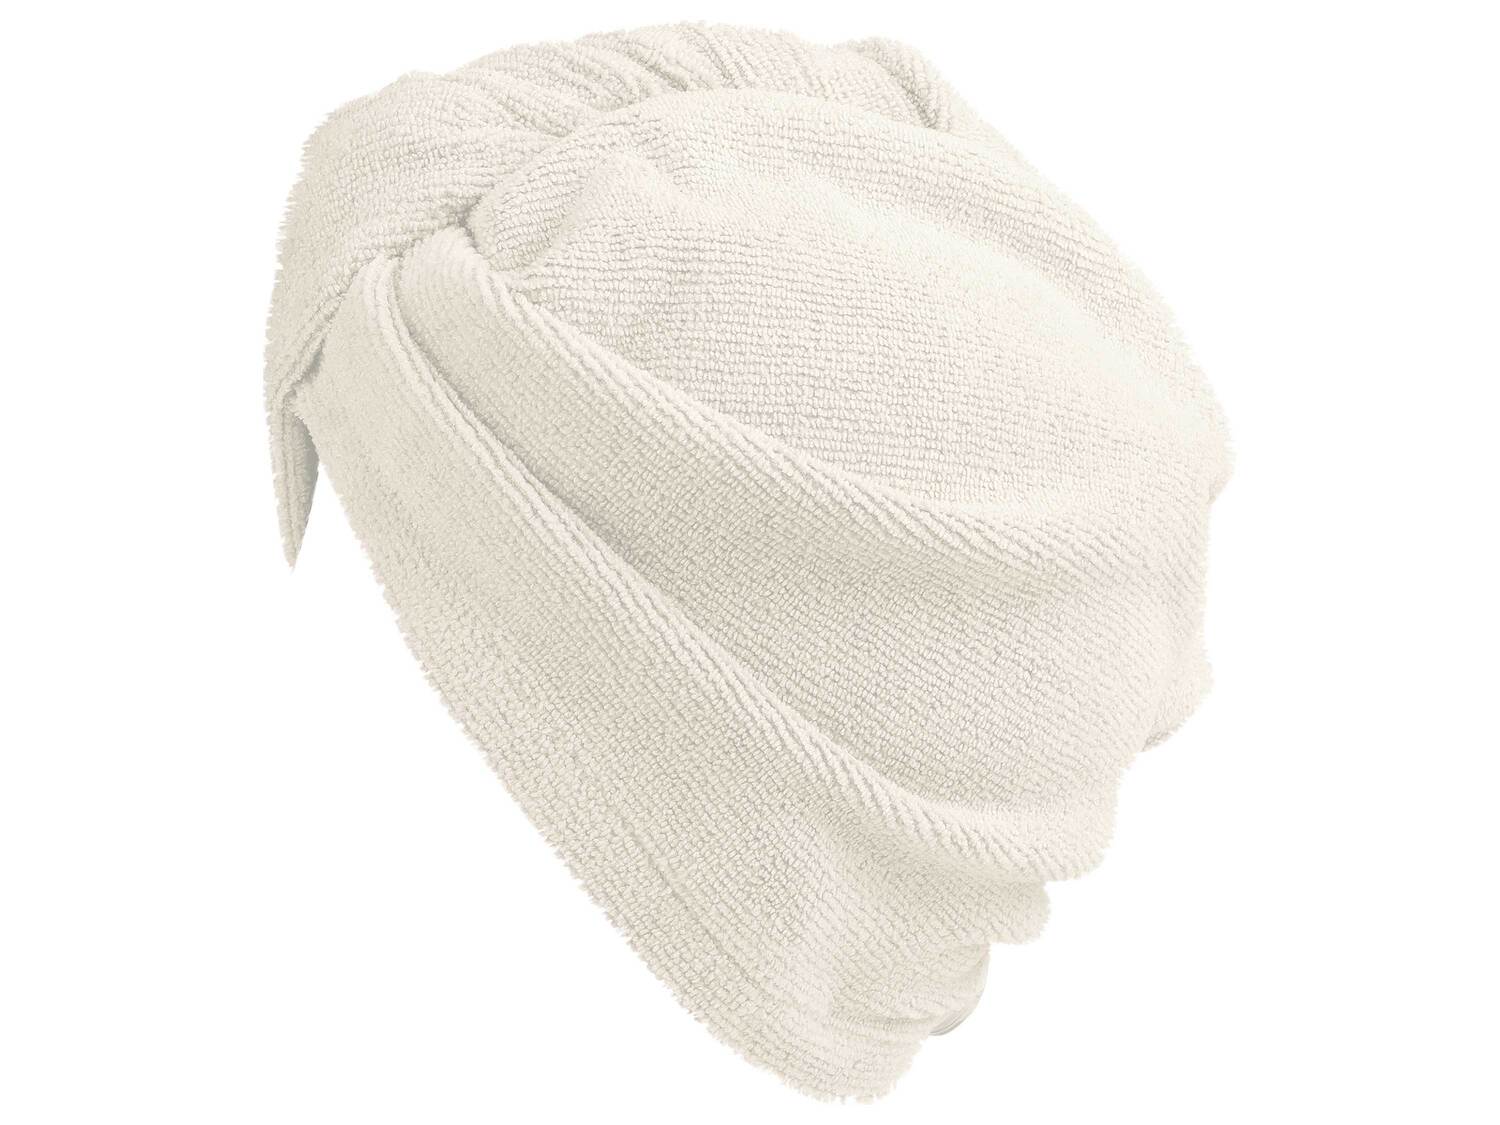 Serviette turban avec bouton , le prix 1.99 &#8364; 
- Ex. 90 % polyester et ...